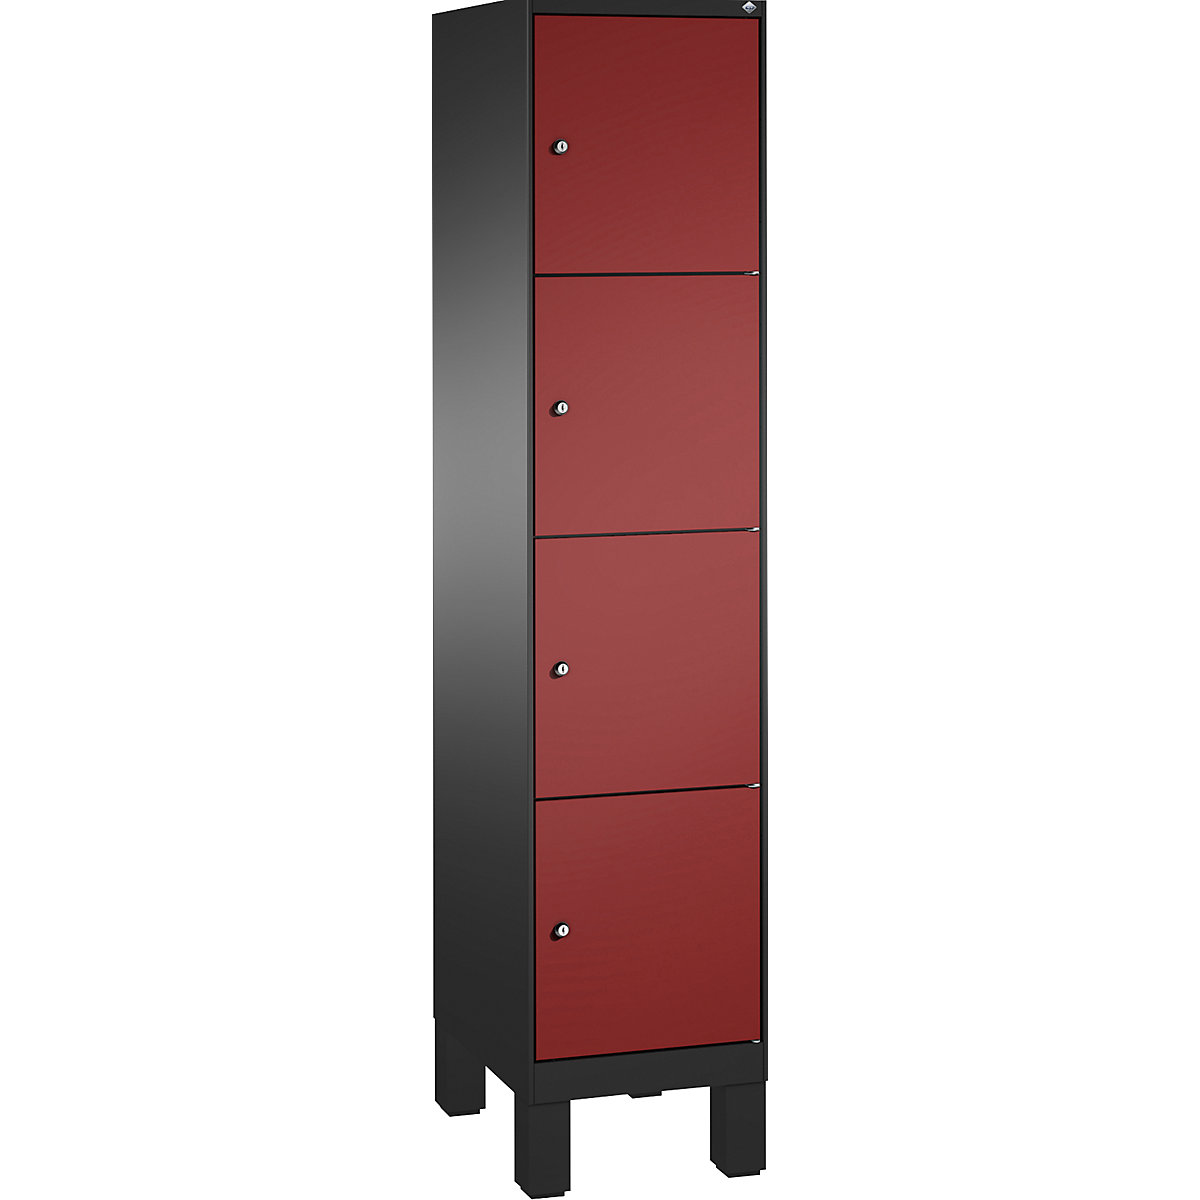 Armoire à casiers sur pieds EVOLO – C+P, 1 compartiment, 4 casiers, largeur compartiment 400 mm, gris noir / rouge rubis-17